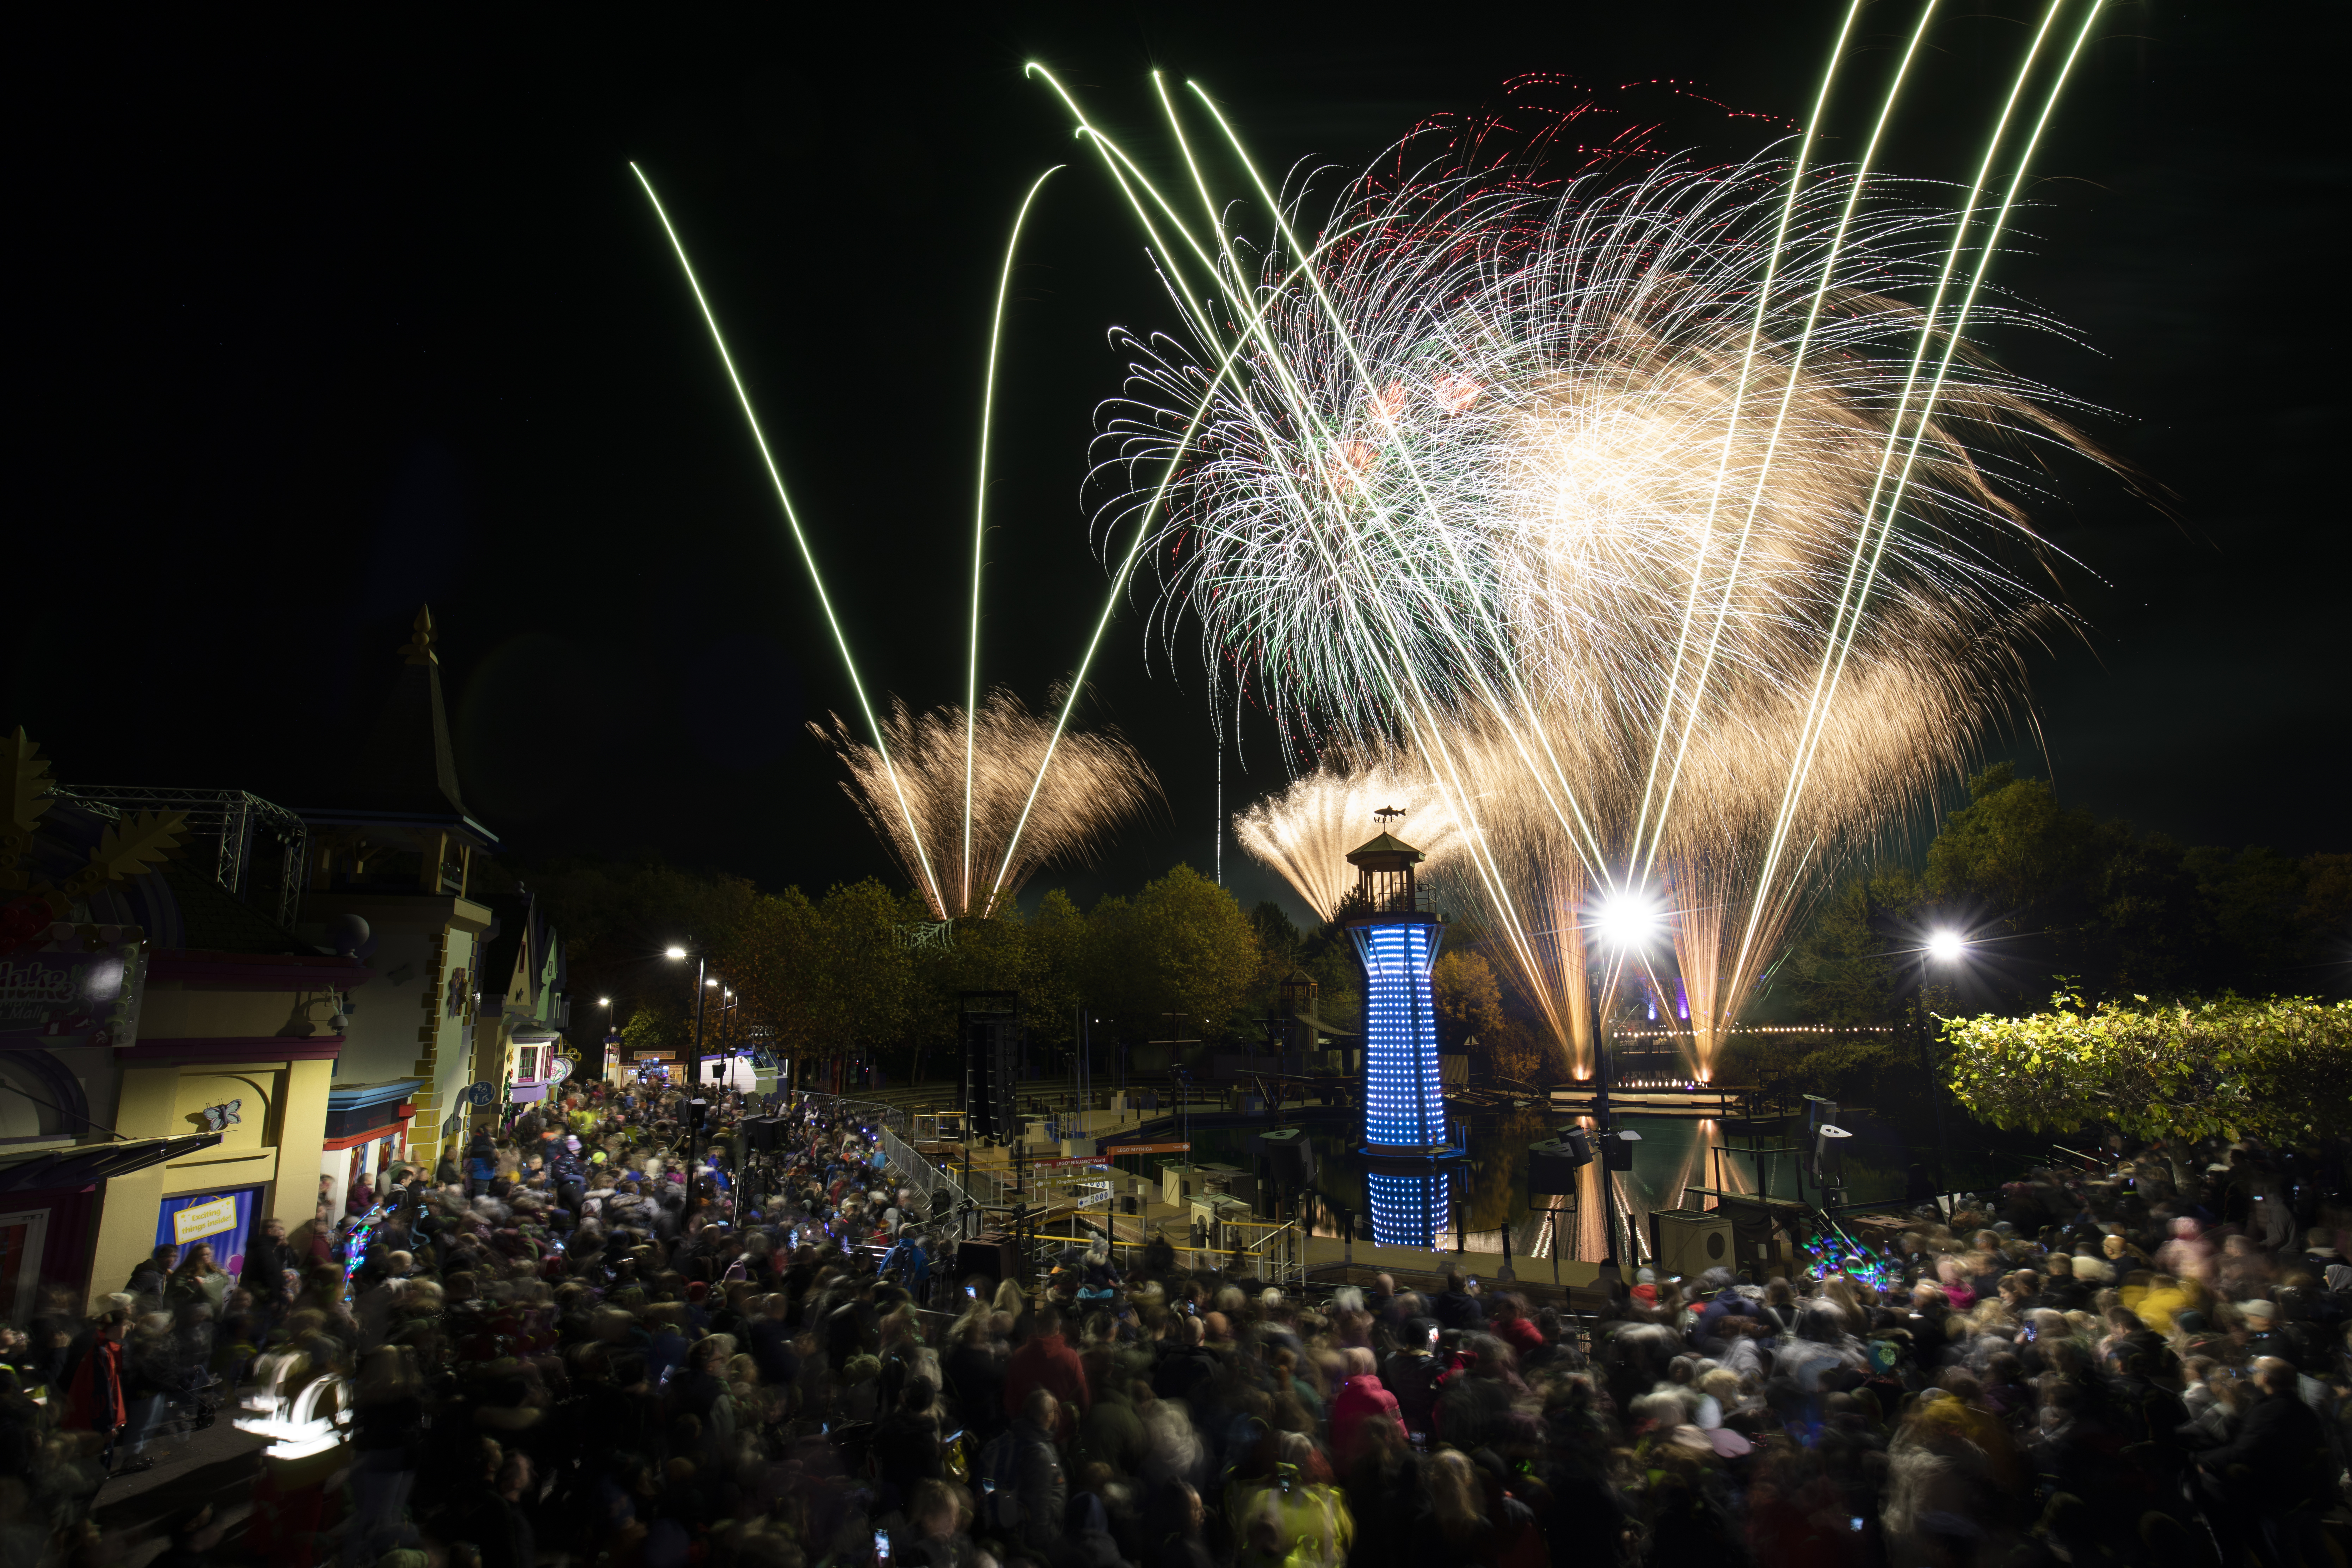 Fireworks Spectacular at the LEGOLAND Windsor Resort